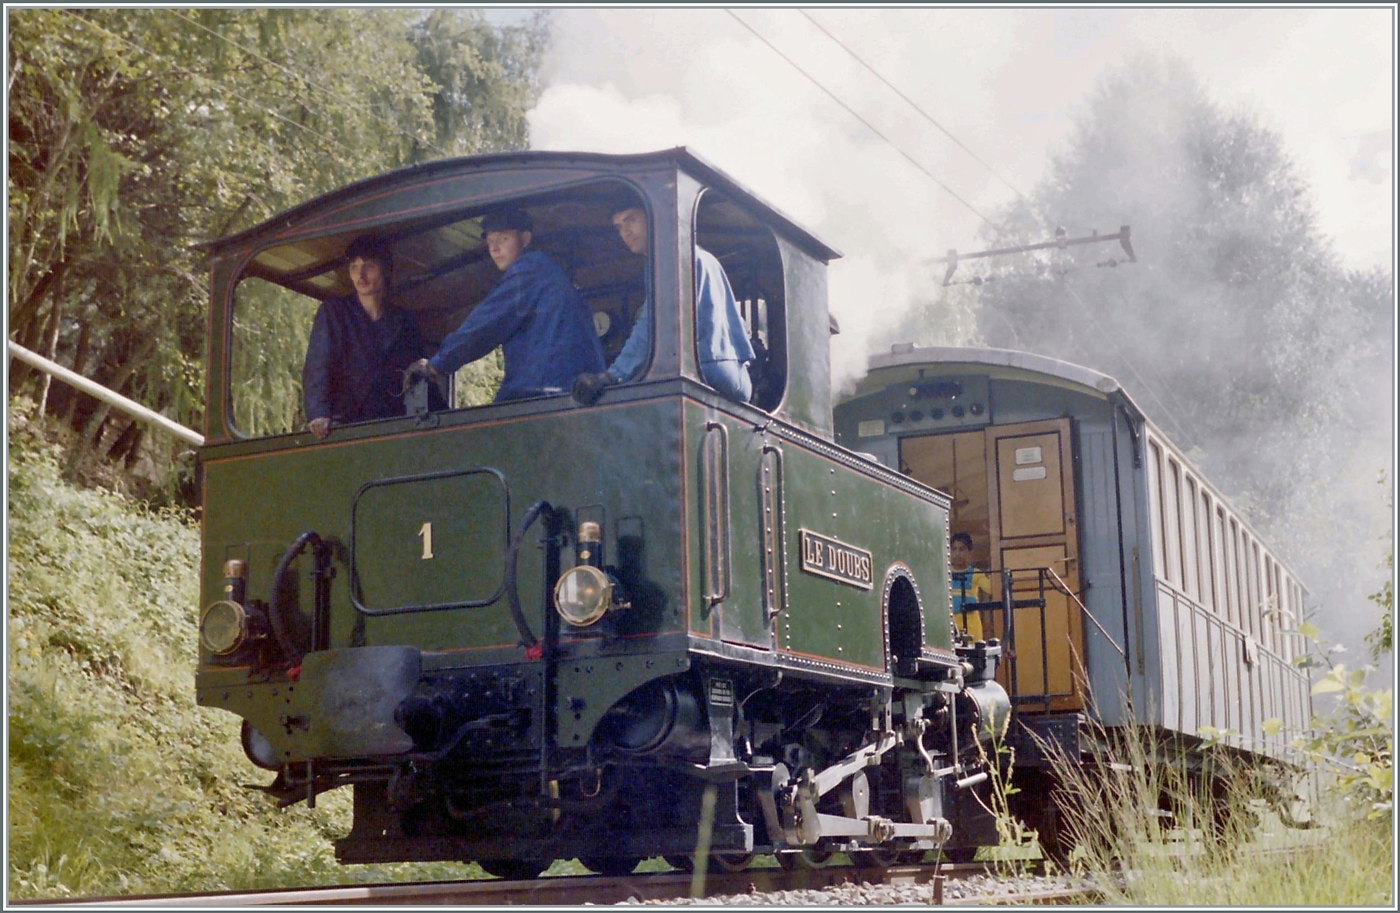 Zu Armins Bild und ausführlichen Text der G 3/3 N° 1  Le Doubs  hier noch ein Bild der Lok im Betriebseinsatz auf der Blonay-Chamby Bahn. Das Analogbild entstand bei Chantemerle und zeigt die Lok mit einem vierachsigen Personenwagen auf der Fahrt nach Blonay. 

August 1985